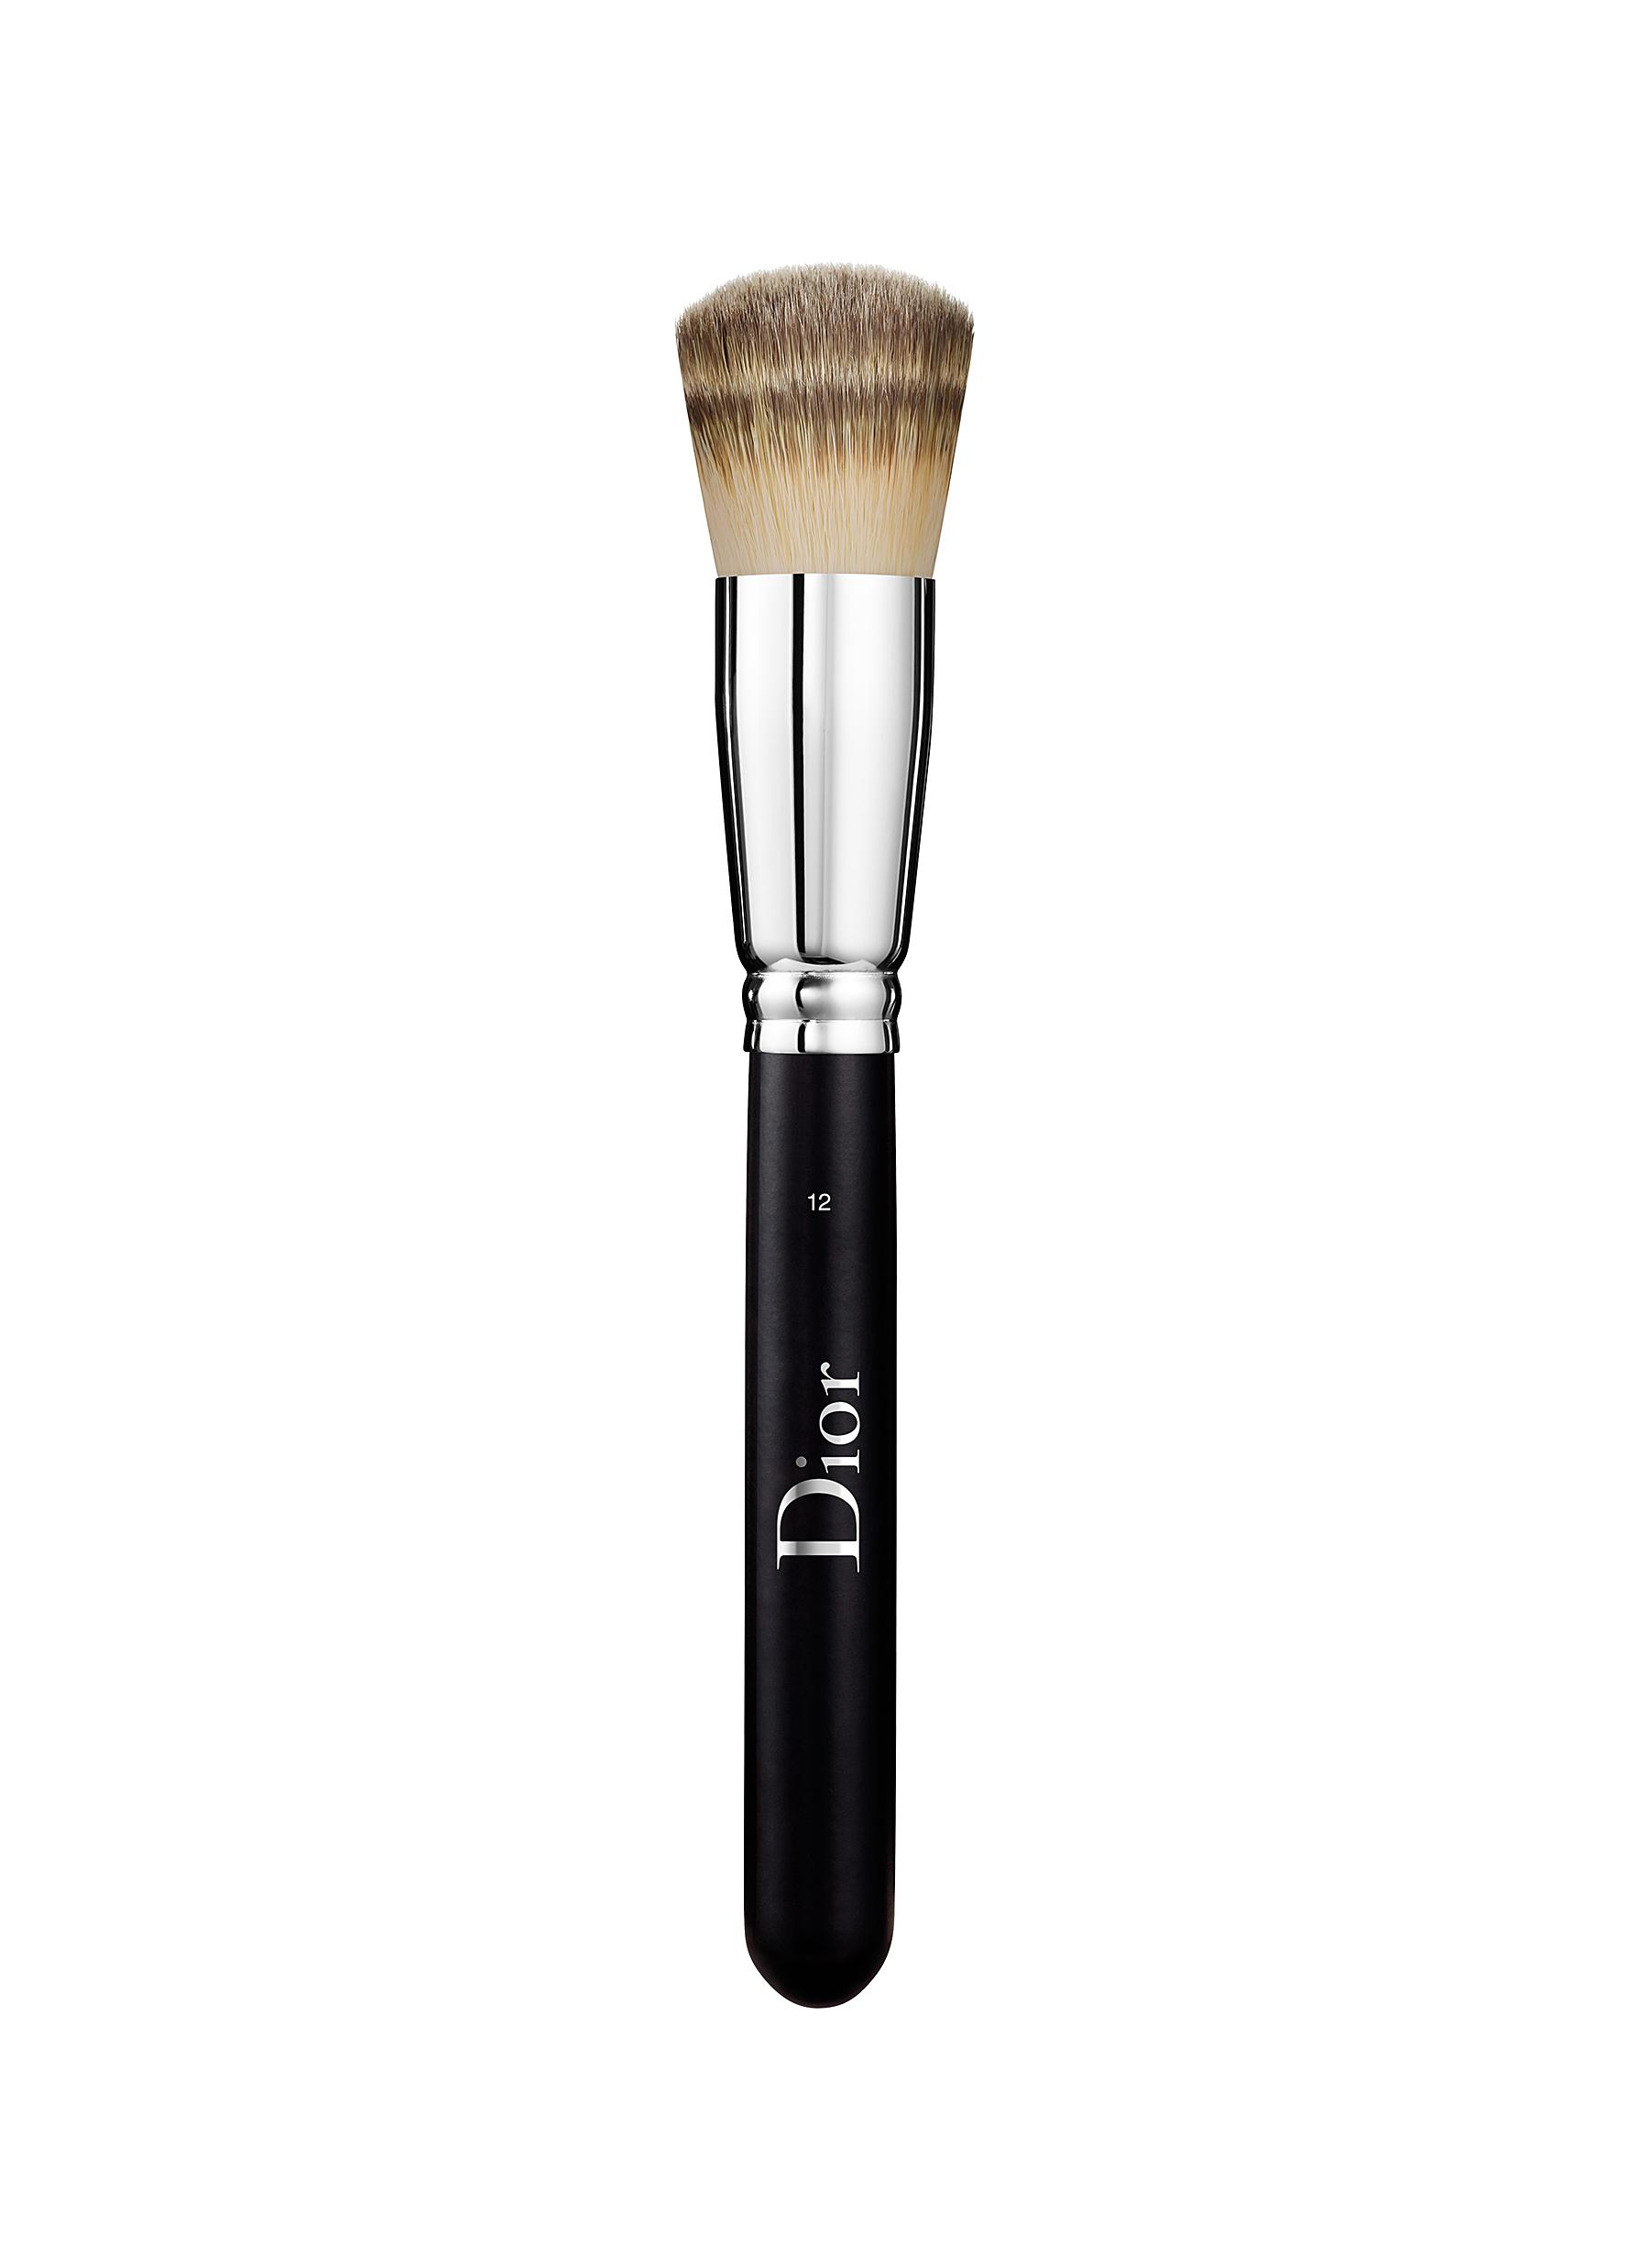 dior makeup brushes set